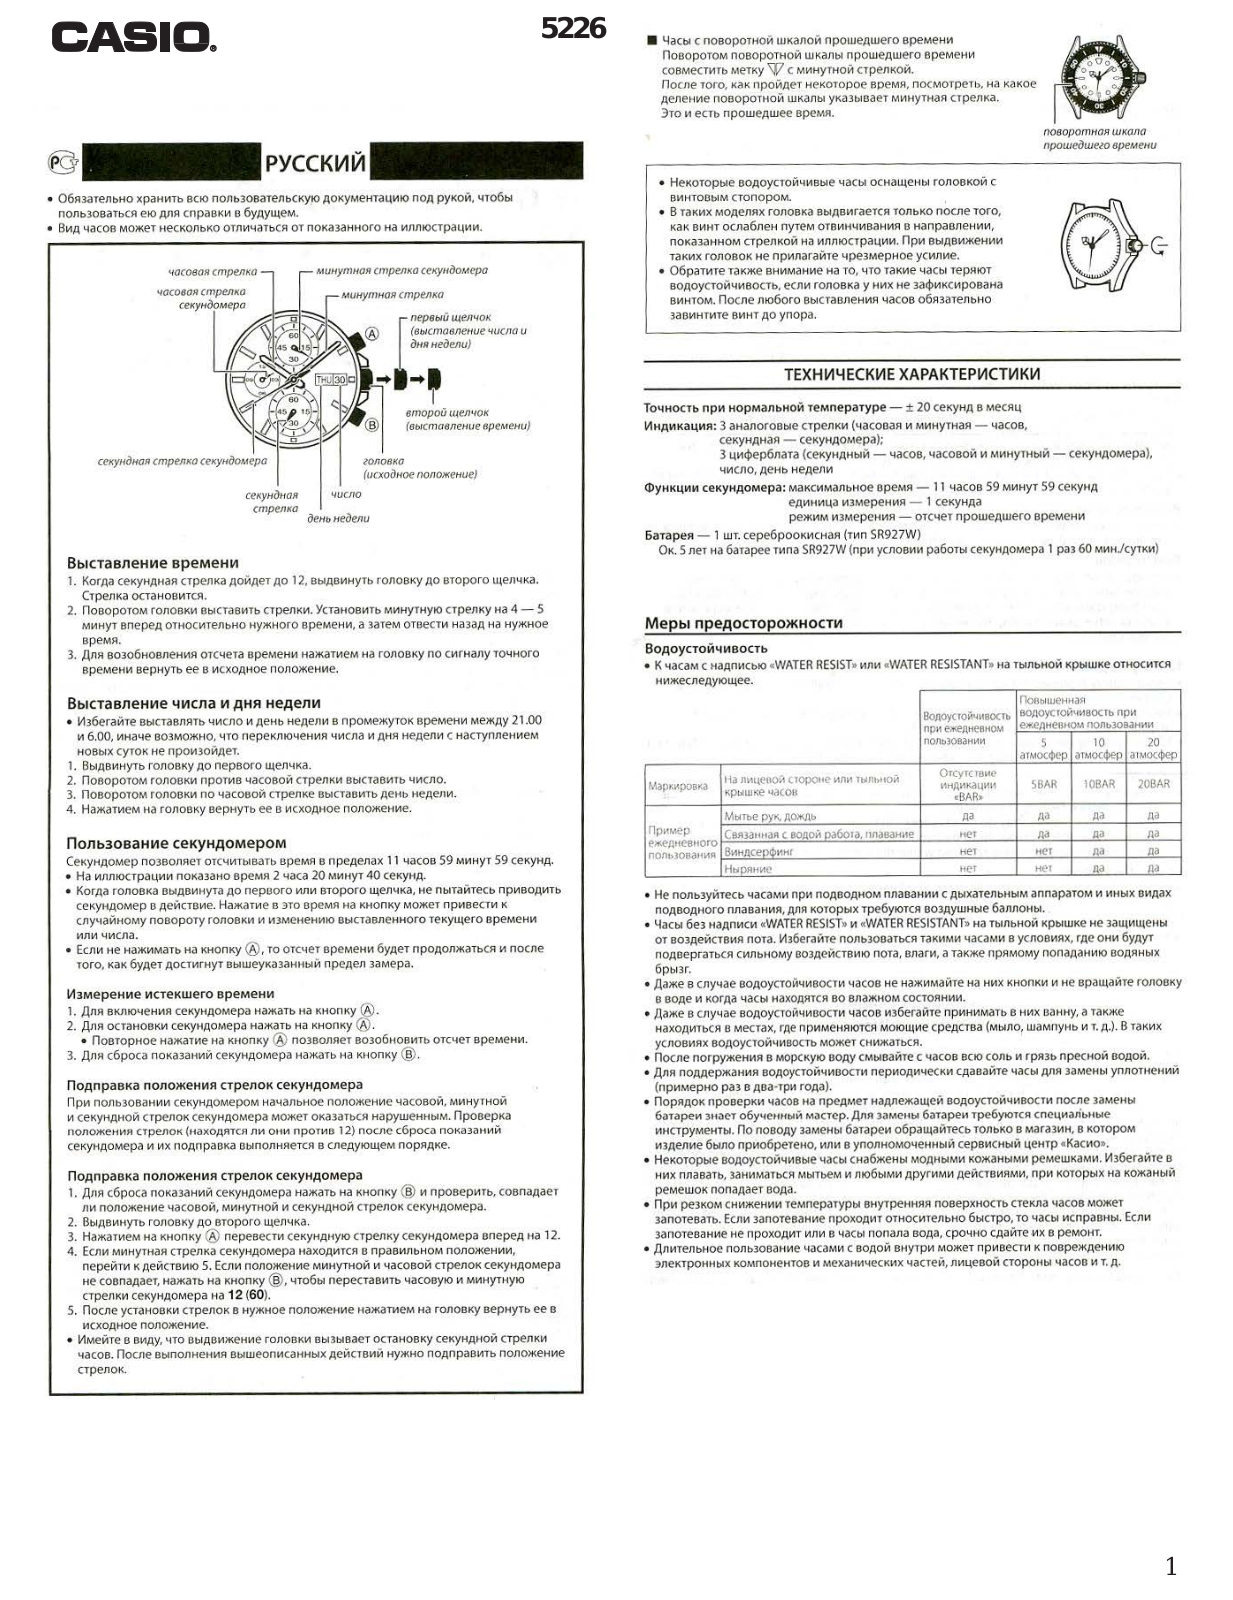 CASIO EFR-502 User Manual